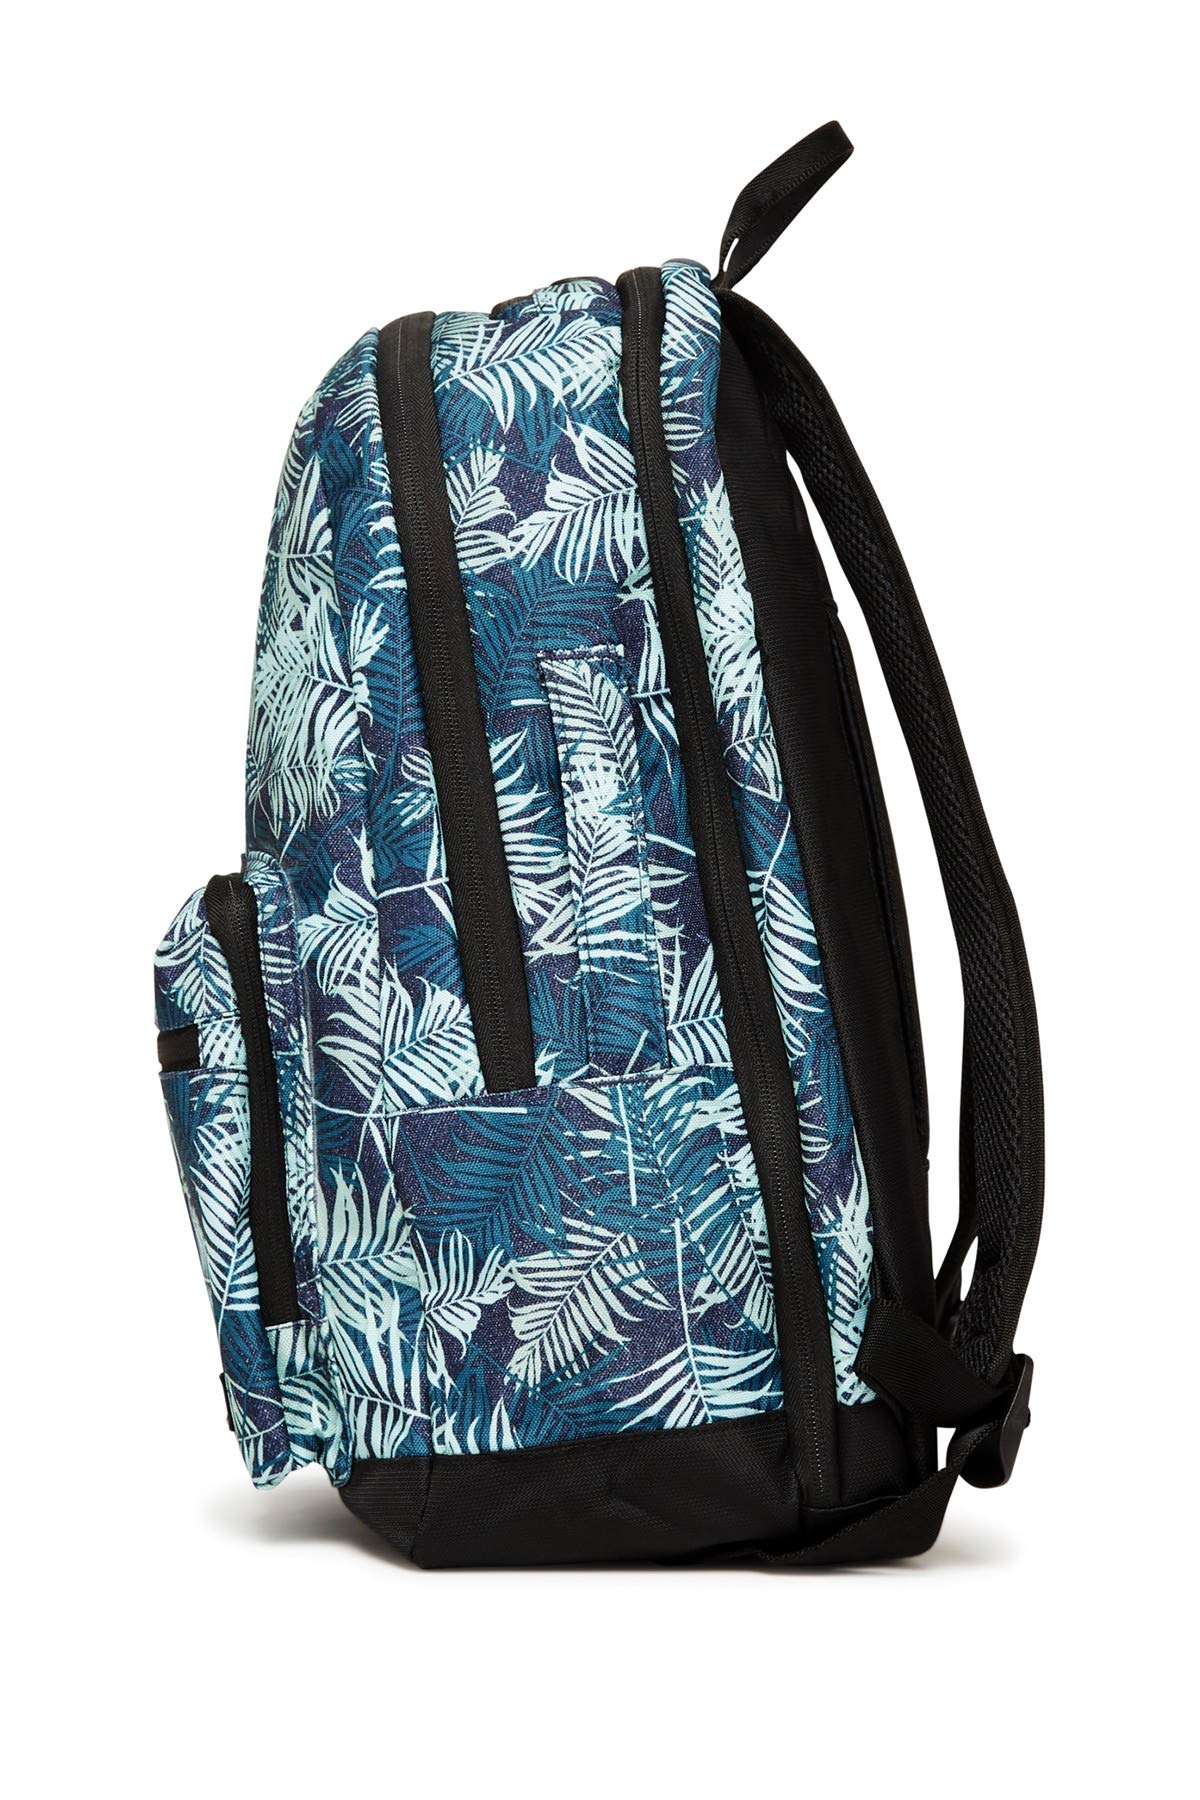 CALPAK Luggage Glenroe Travel Backpack for Men, Palm Leaf - image 2 of 6